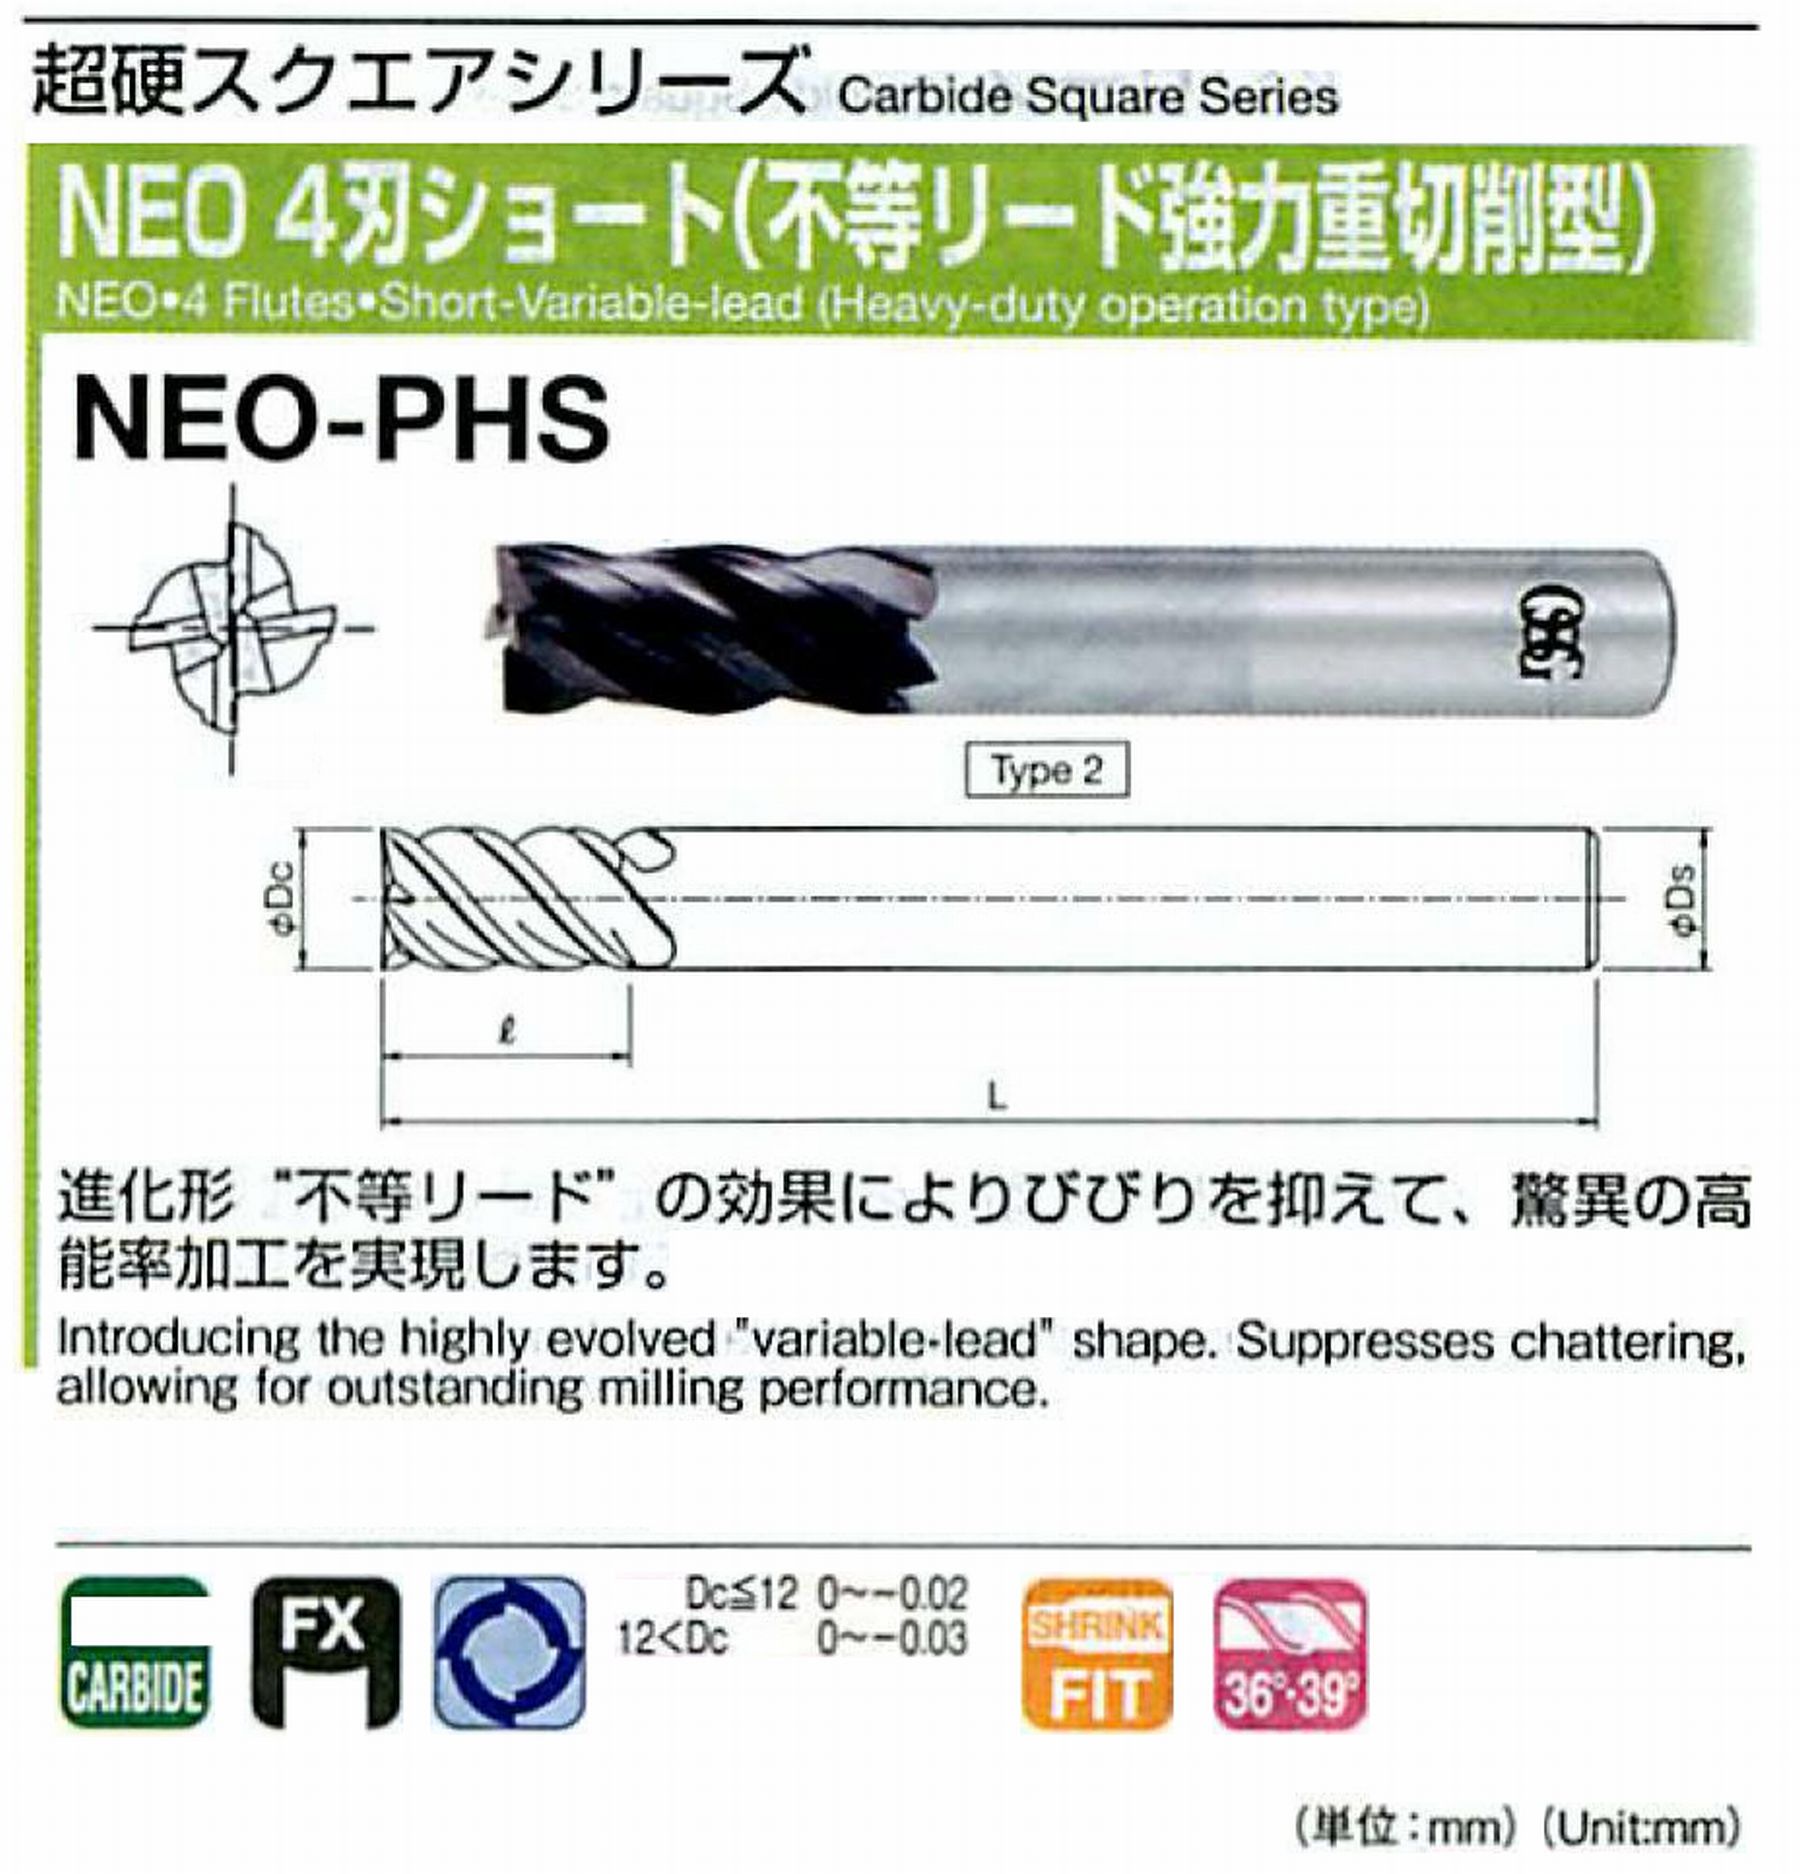 オーエスジー/OSG NEO 4刃ショート(不等リード強力重切削型) NEO-PHS 外径10 全長70 刃長20 シャンク径10mm 形状2